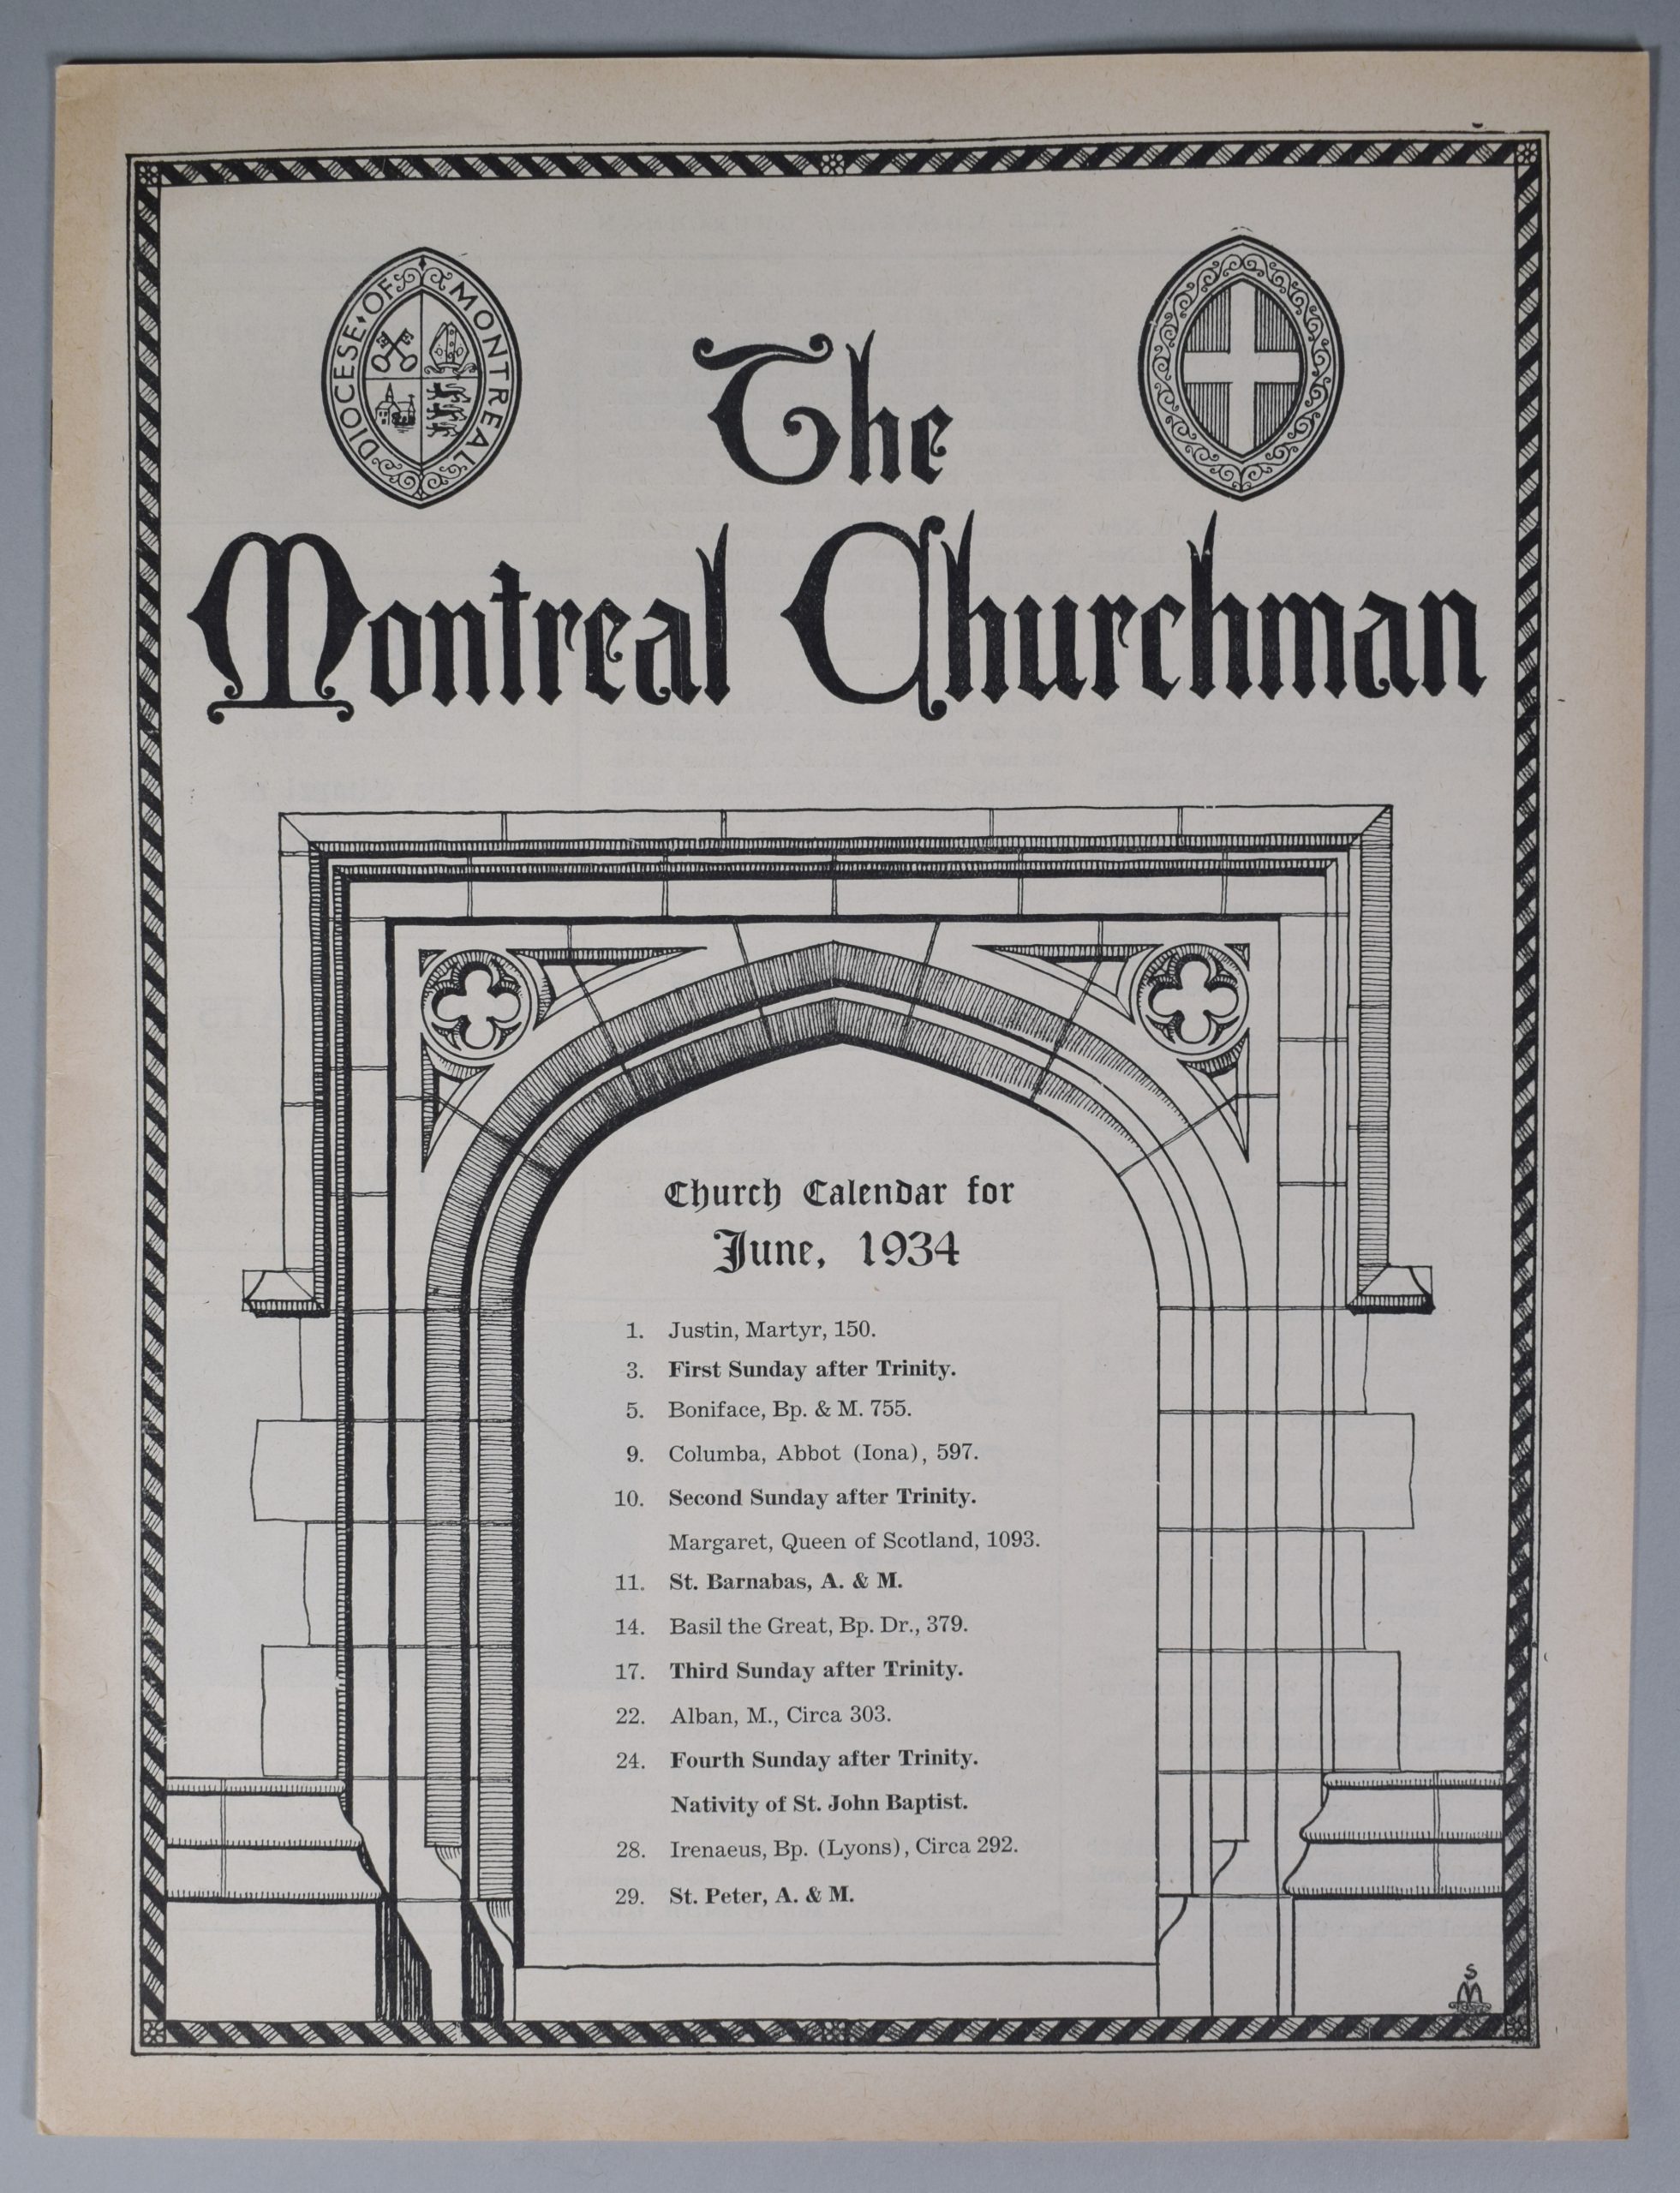 Page couverture du Montreal Churchman de juin 1934, encre noire sur papier sépia. Dans le haut de la page, le titre « The Montreal Churchman ». À gauche du titre, l’armoirie du Diocèse de Montréal. Sous le titre, le dessin d’une porte de pierre en arche en forme d’ogive dans laquelle on lit « Church Calendar for June, 1943 » suivi de la liste des évènements du mois.